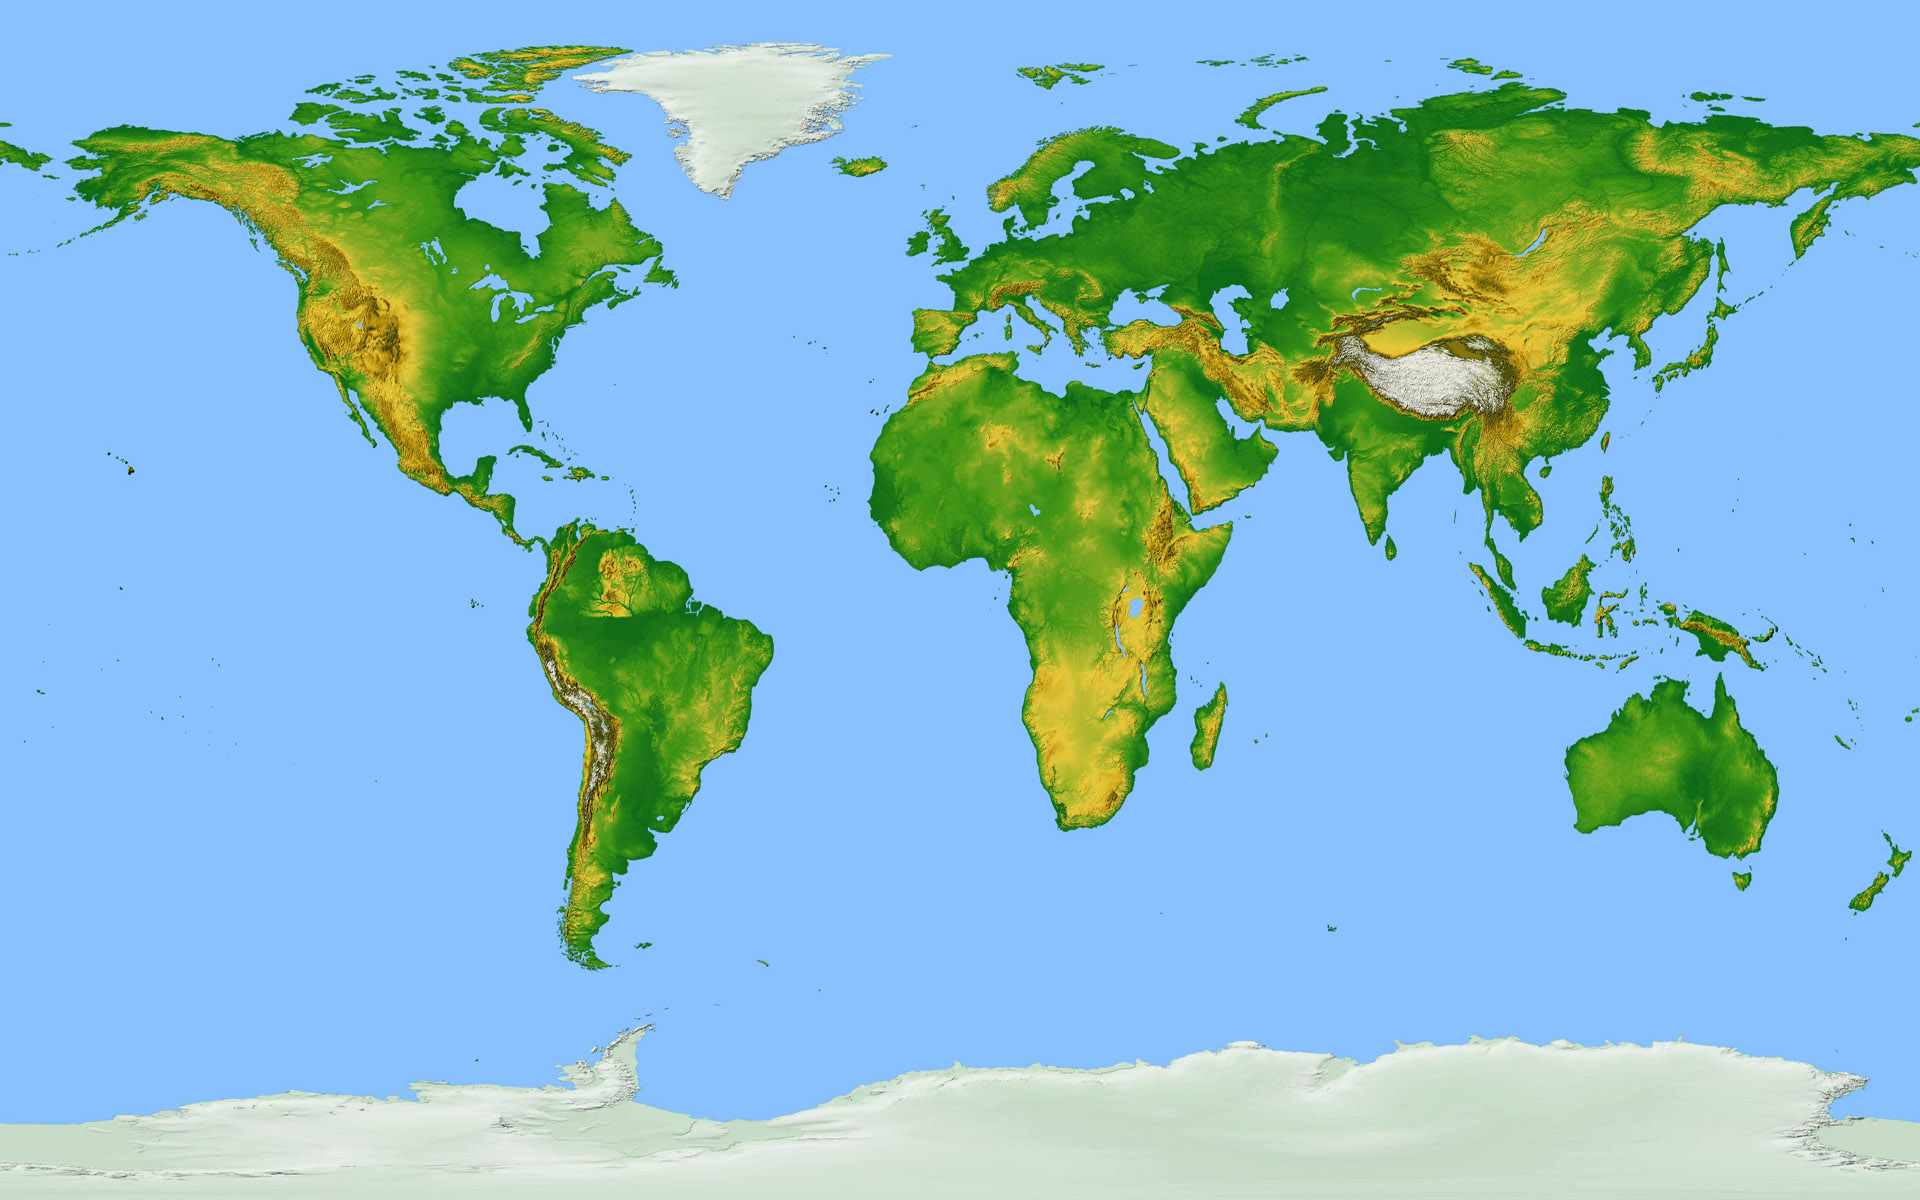 Previous, Widescreen - Map of Earth wallpaper